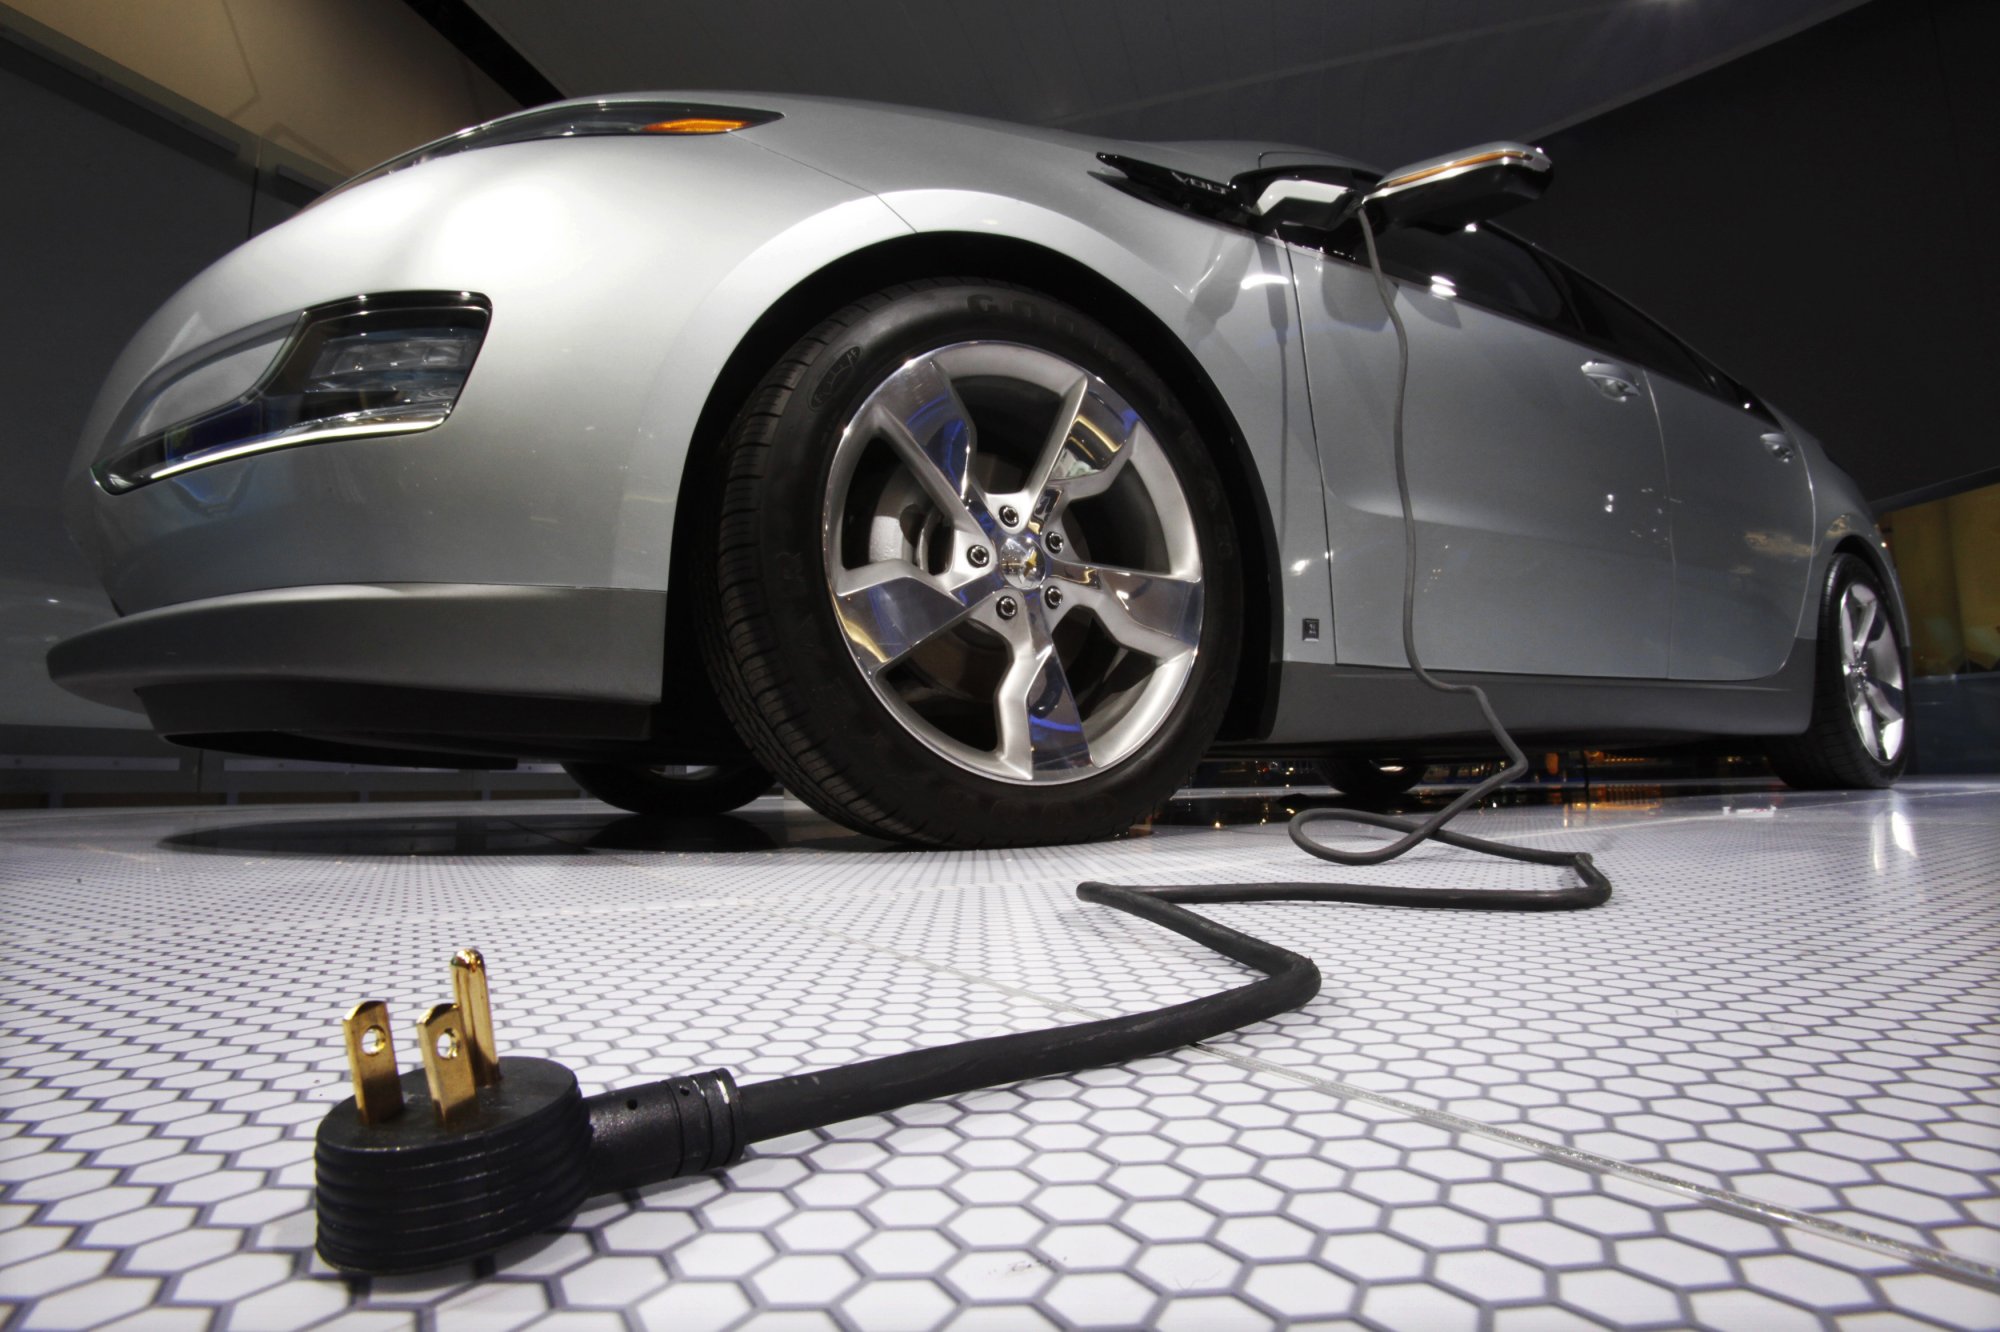 Ηλεκτροκίνηση: Εξαπλασιάστηκε σε μια δεκαετία το μερίδιο των αυτοκινήτων μπαταρίας